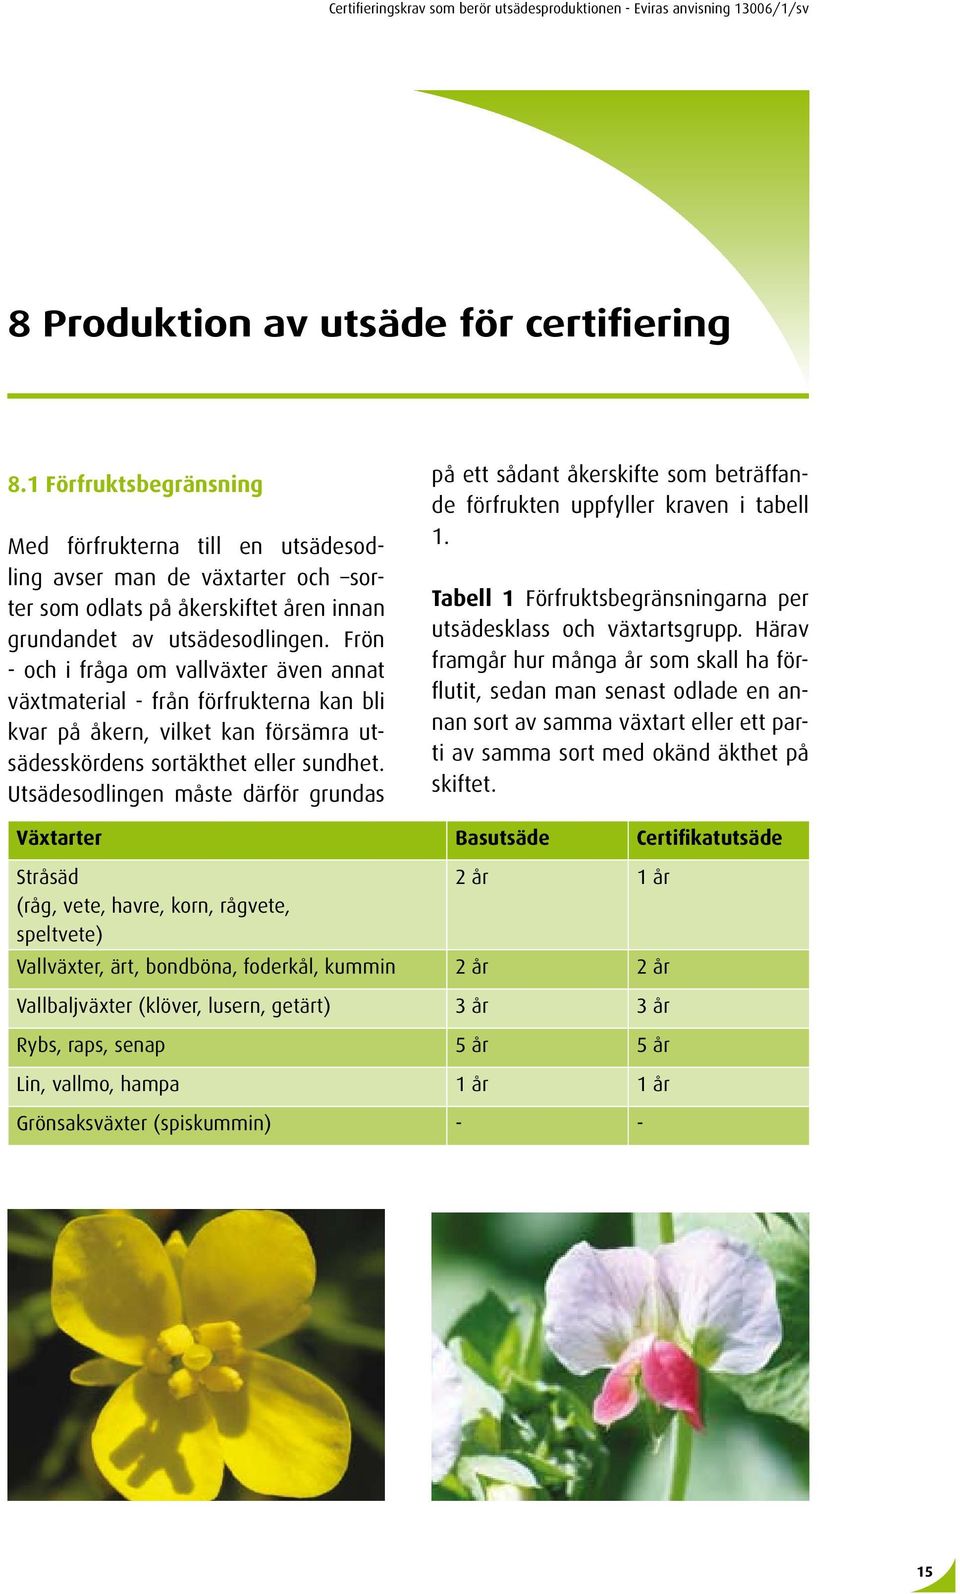 Frön - och i fråga om vallväxter även annat växtmaterial - från förfrukterna kan bli kvar på åkern, vilket kan försämra utsädesskördens sortäkthet eller sundhet.